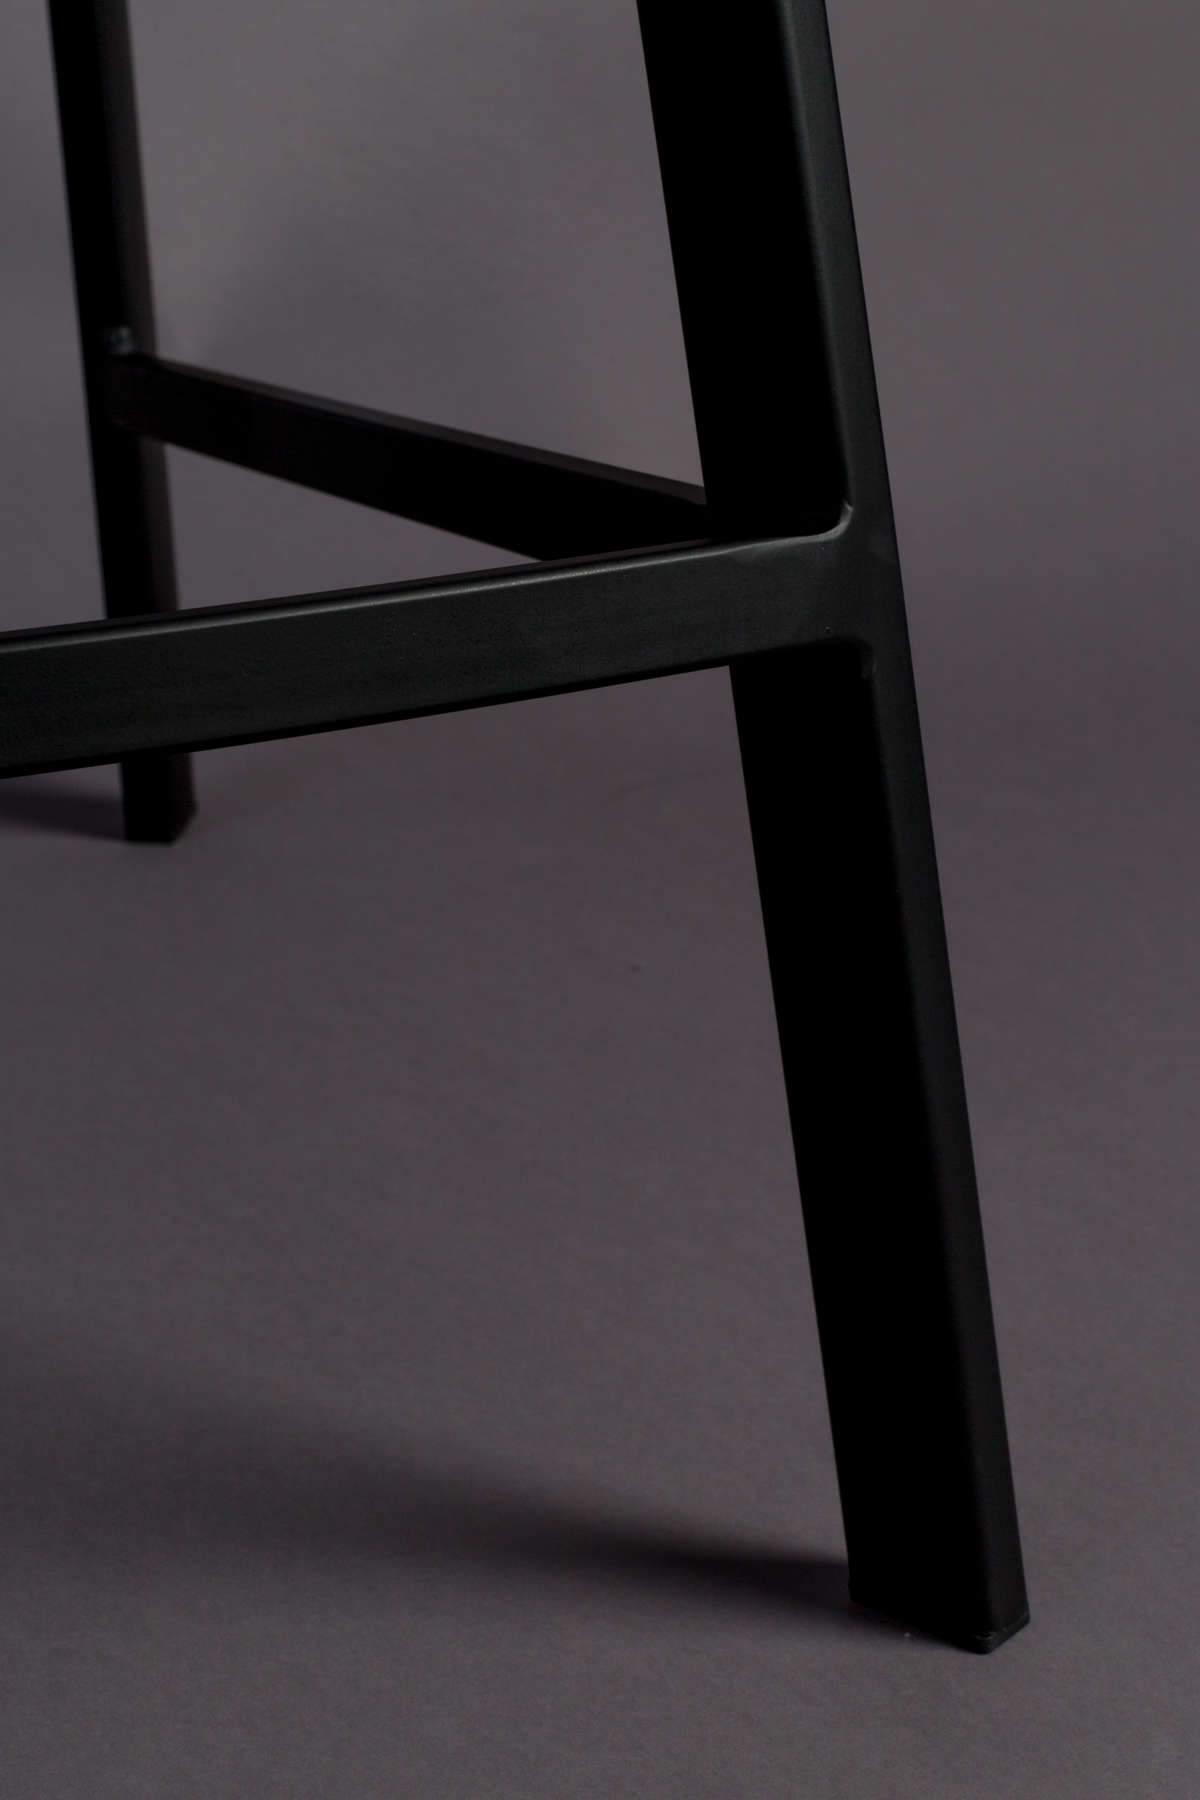 Krzesło barowe FRANKY szary Dutchbone    Eye on Design